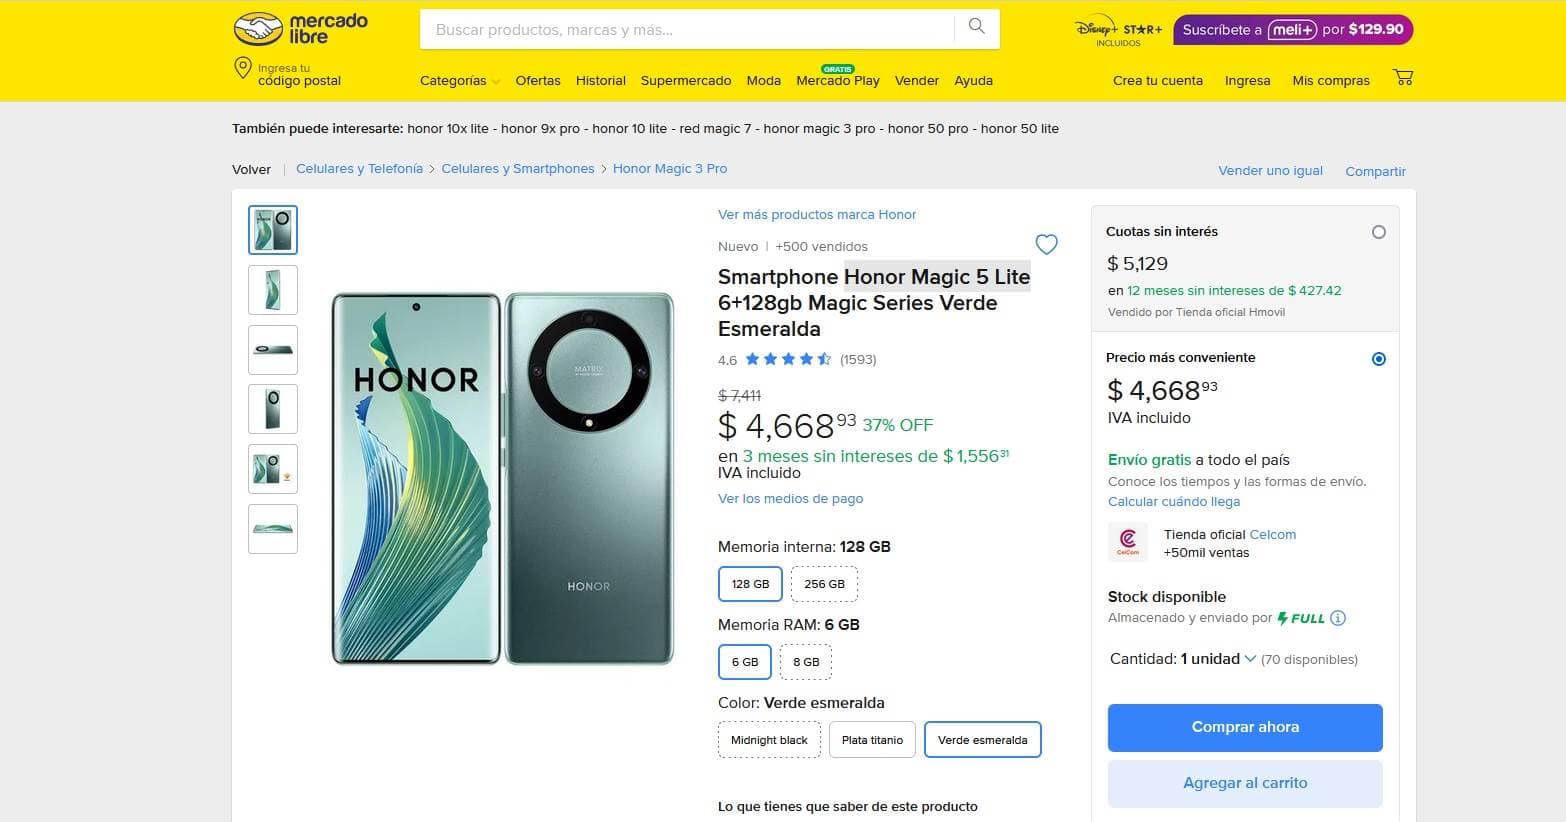 Smartphone Honor Magic 5 Lite con descuento en su precio de lista en Mercado Libre.